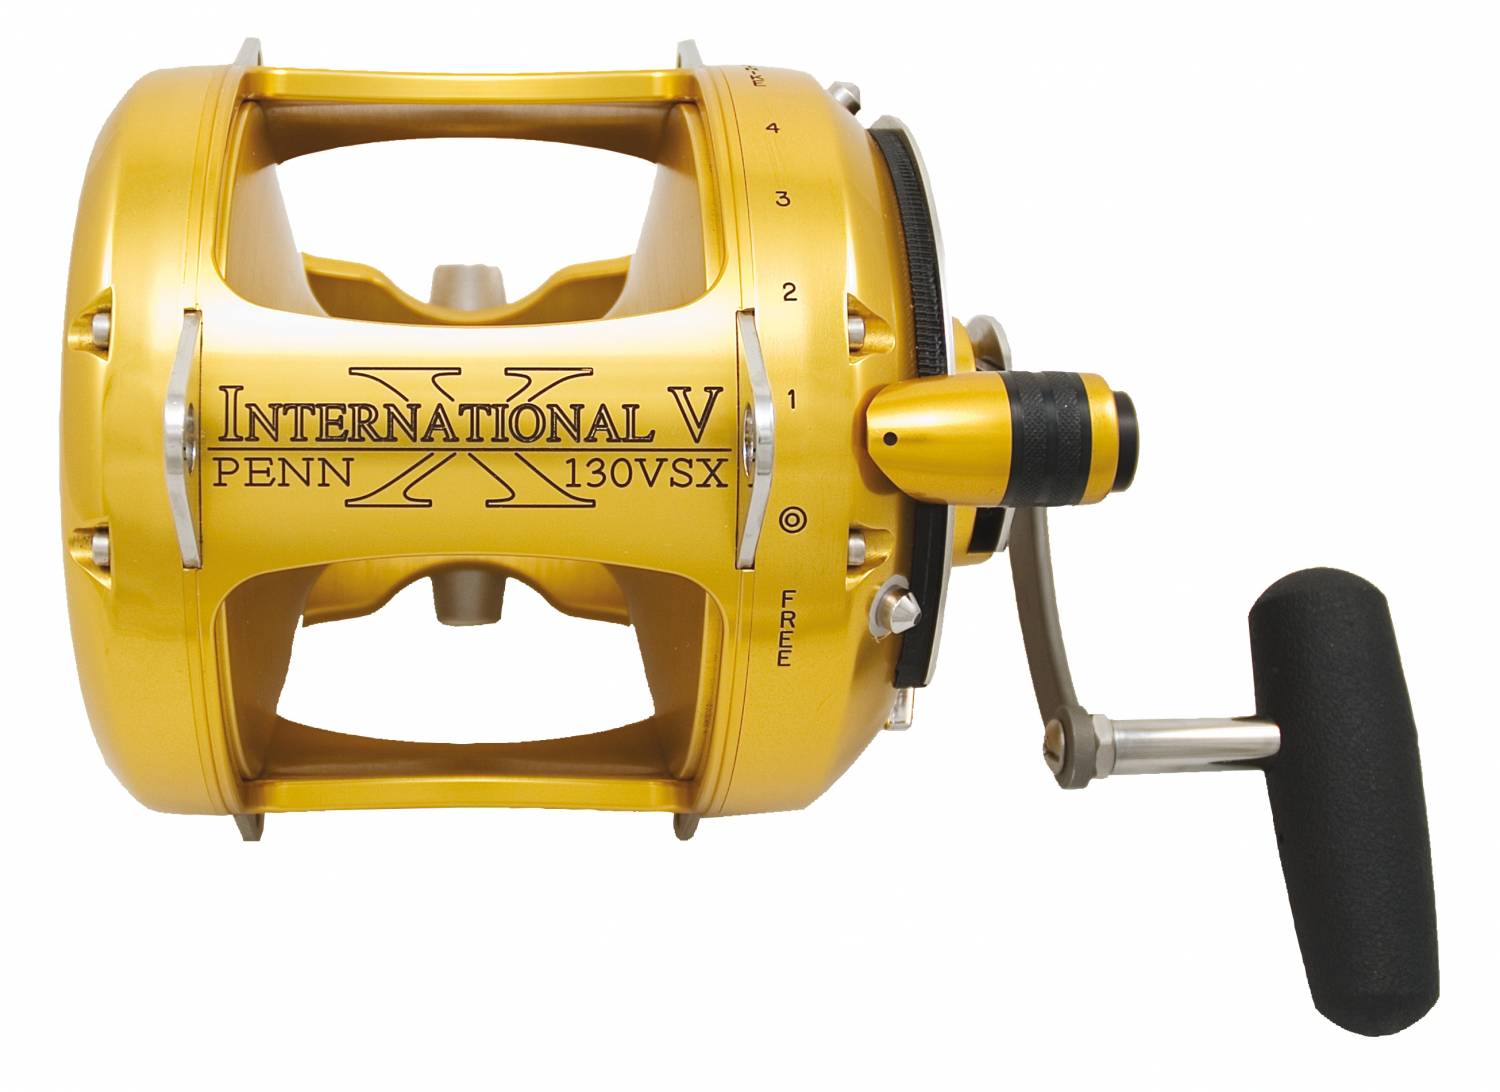 Penn International V 16vsx 2 Speed Reel 16 VSX for sale online